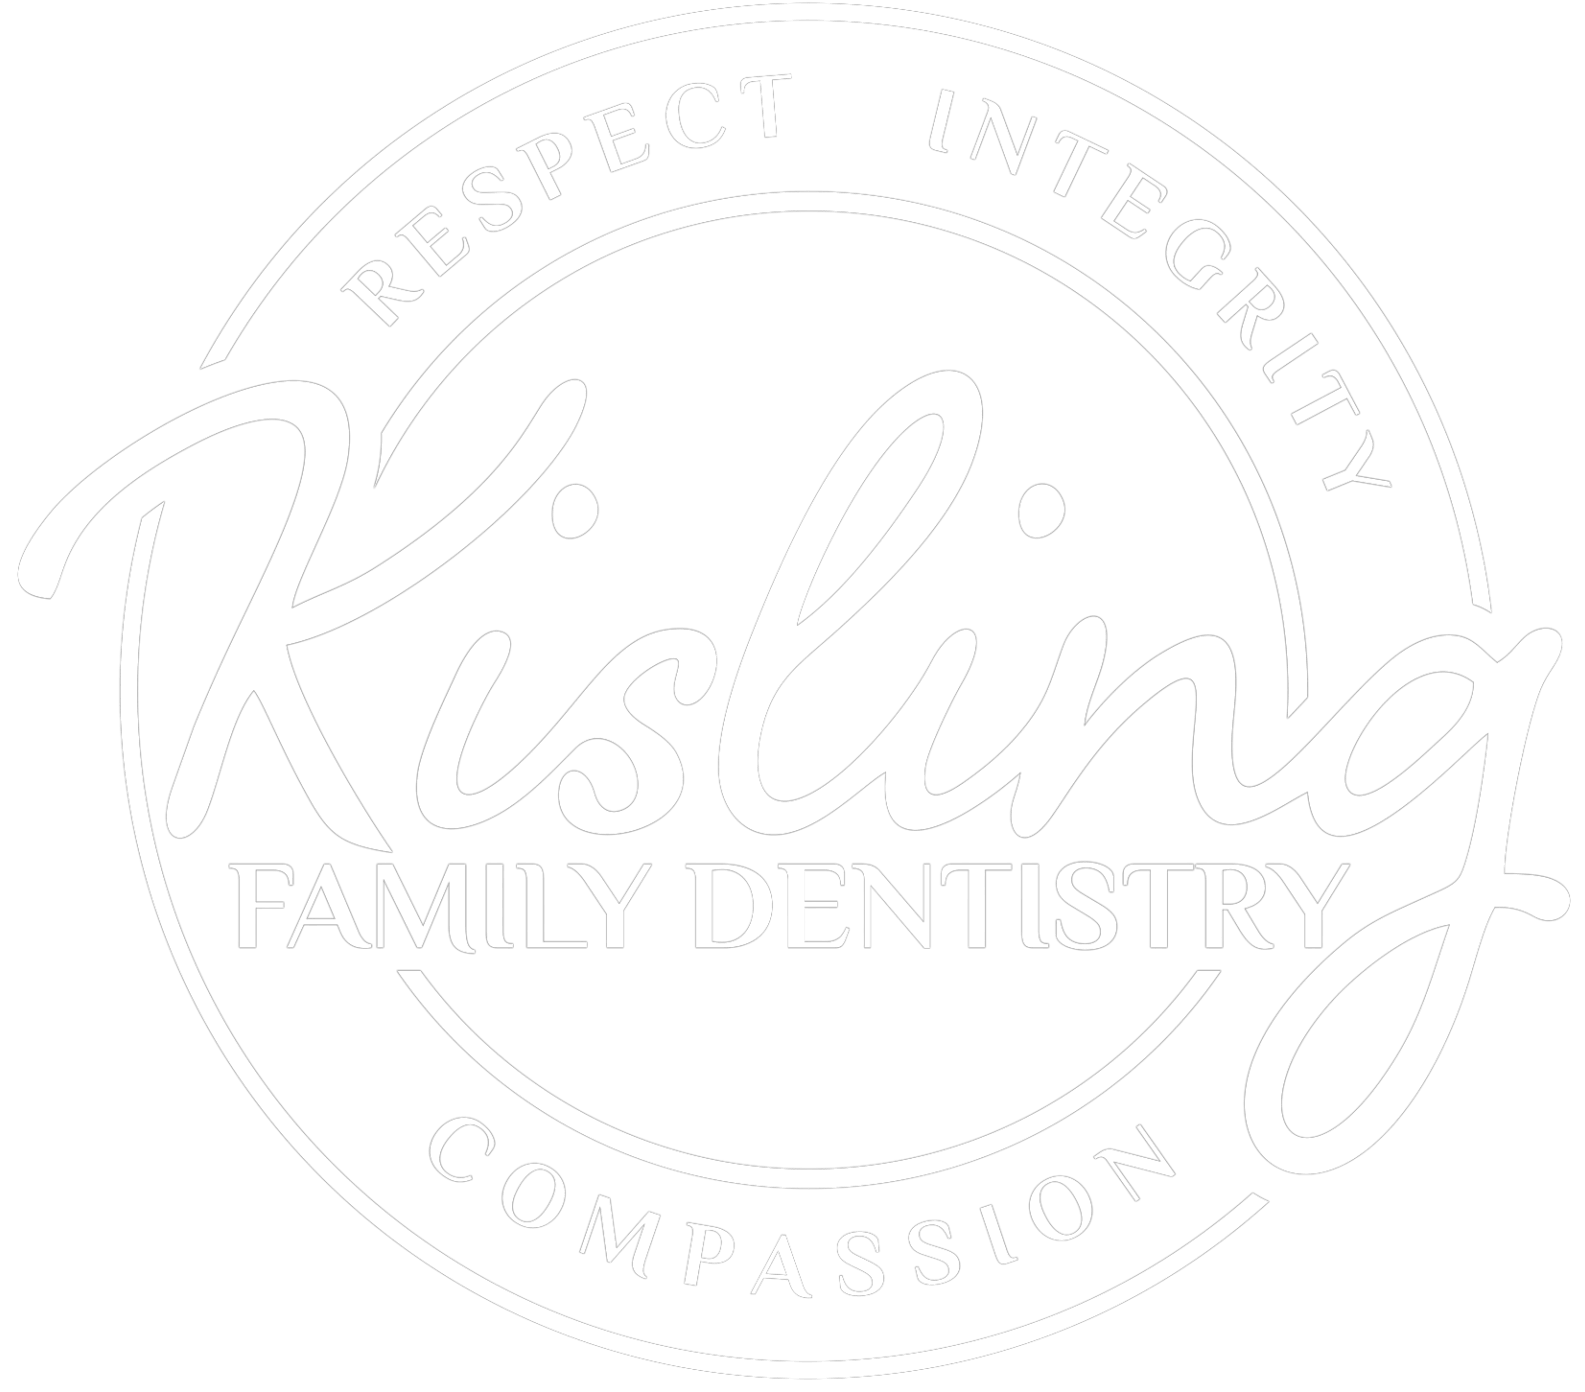 Kisling Family Dentistry Logo | Best Family Dentist for Cosmetic, Emergency, Restorative Dental Care | Leawood, KS 66209